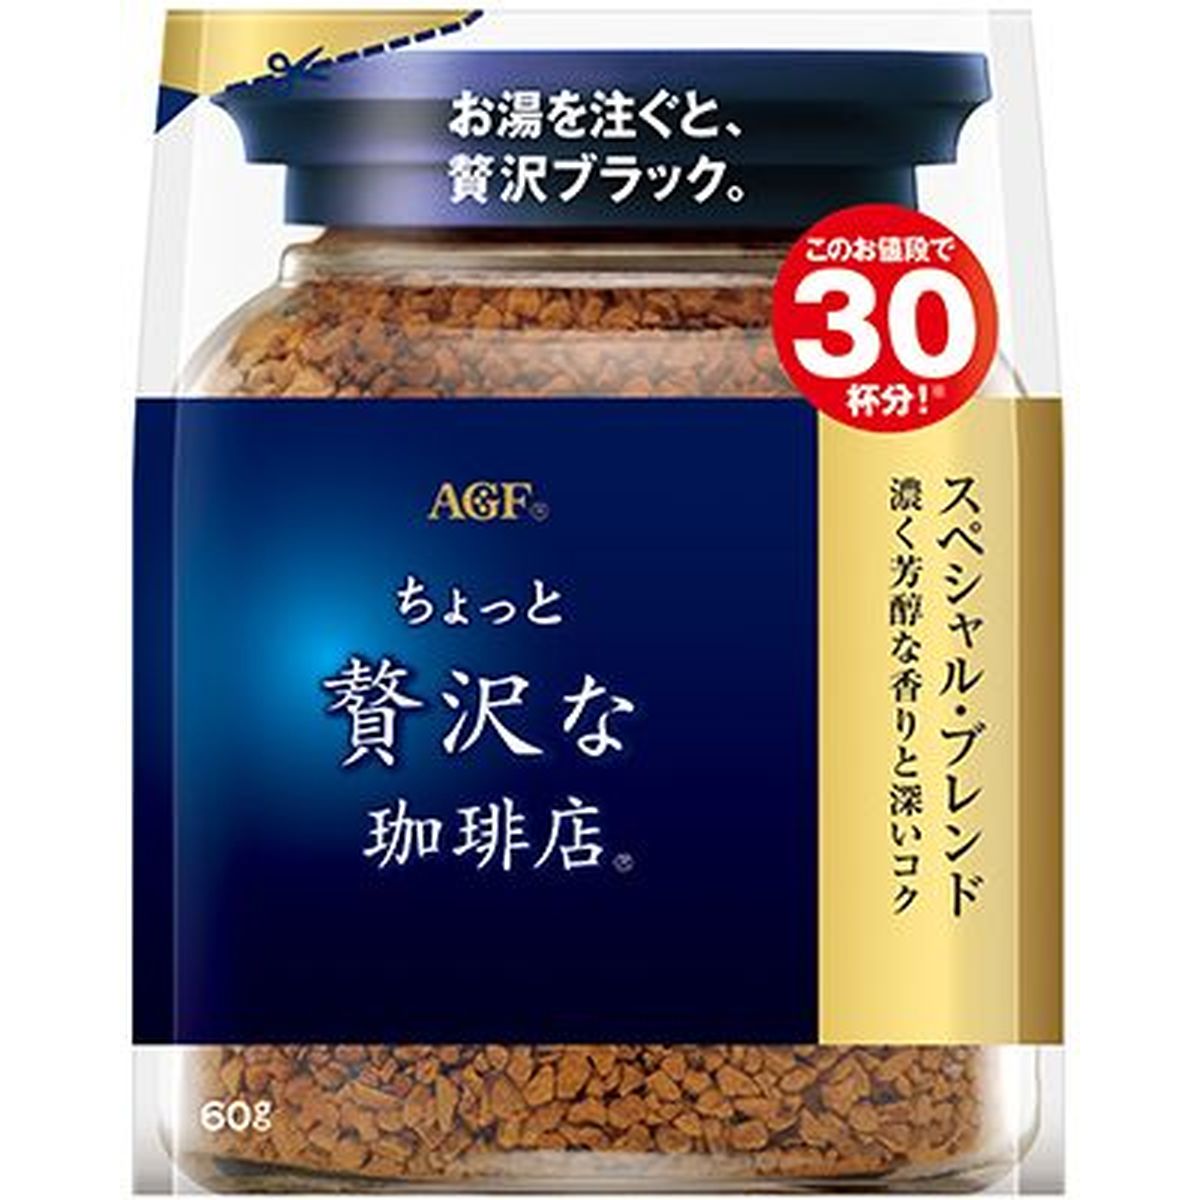 【12個入リ】AGF チョット贅沢ナ珈琲店 スペシャル 袋 60g